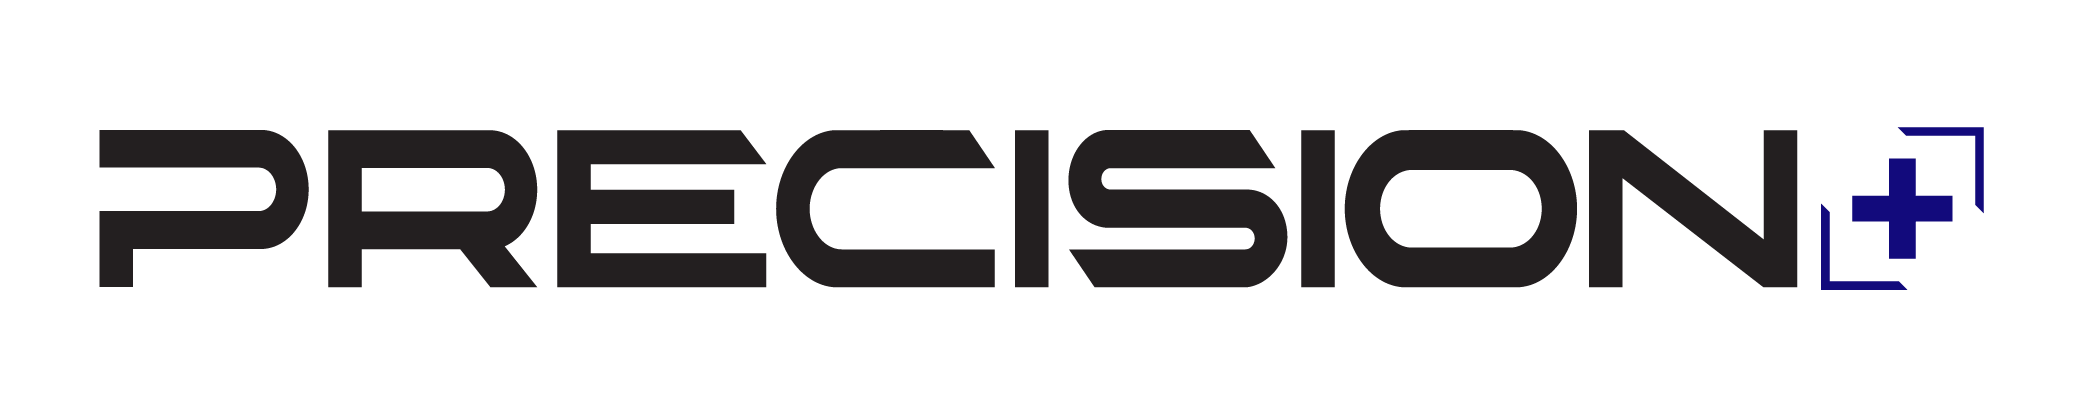 PrecisionPlus-logo